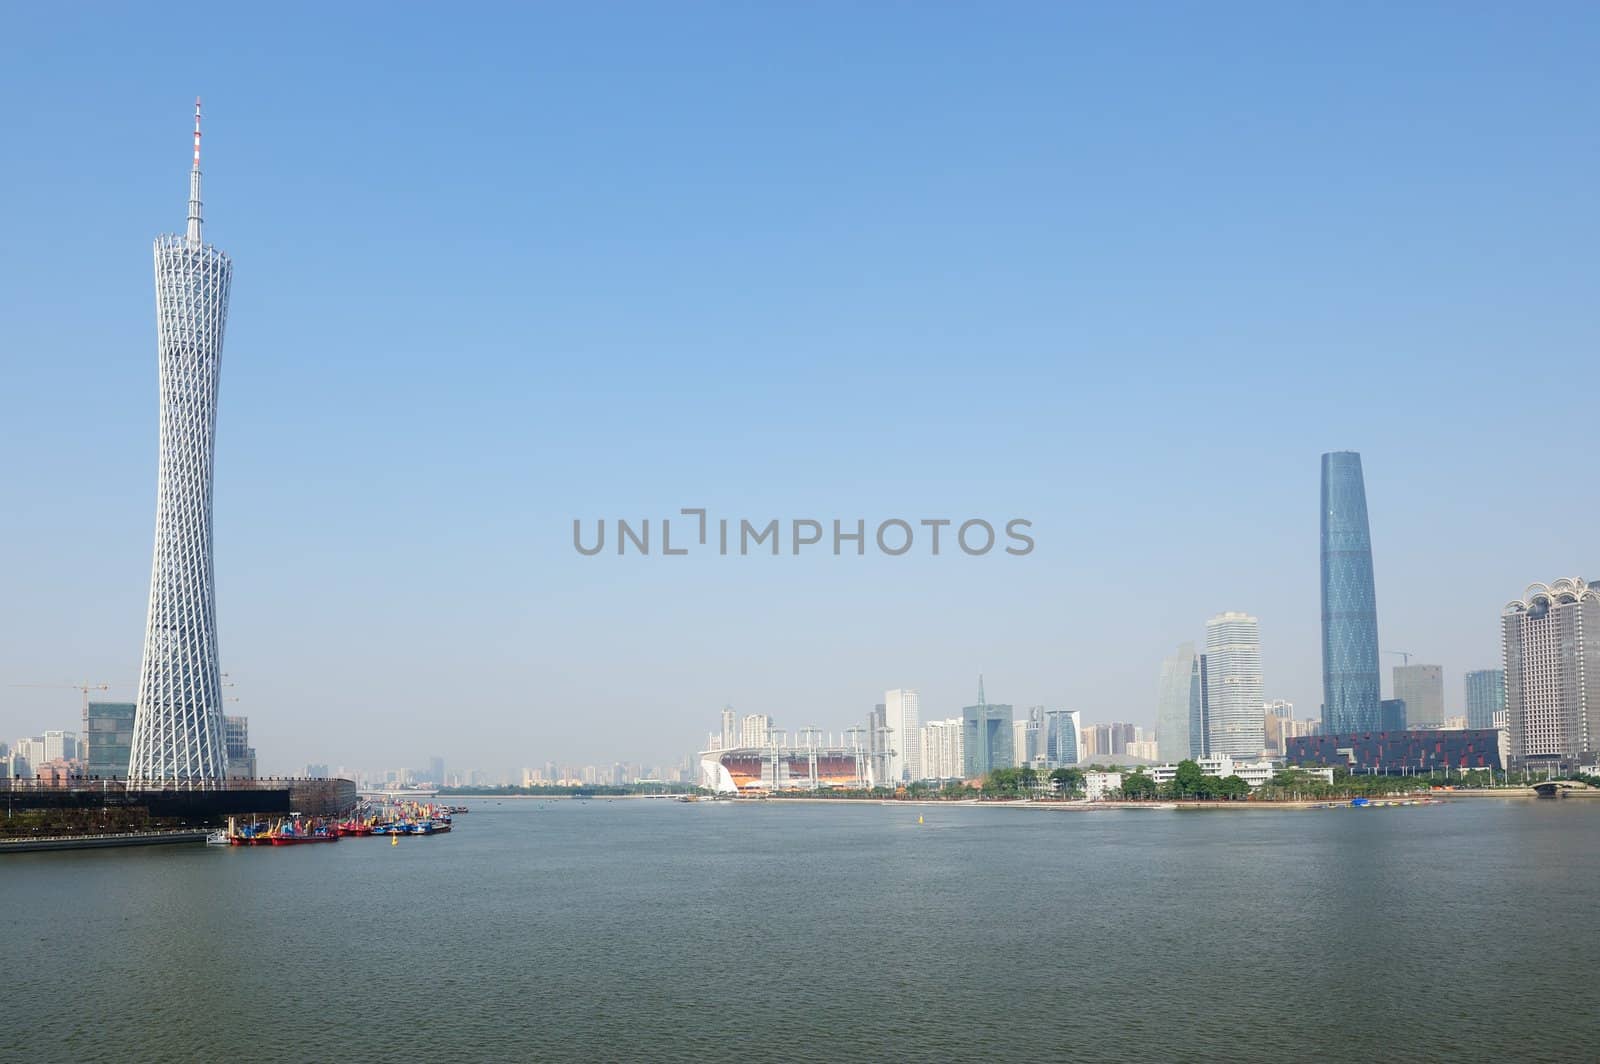 Zhujiang River landscape in Guangzhou city, Guangdong province, China